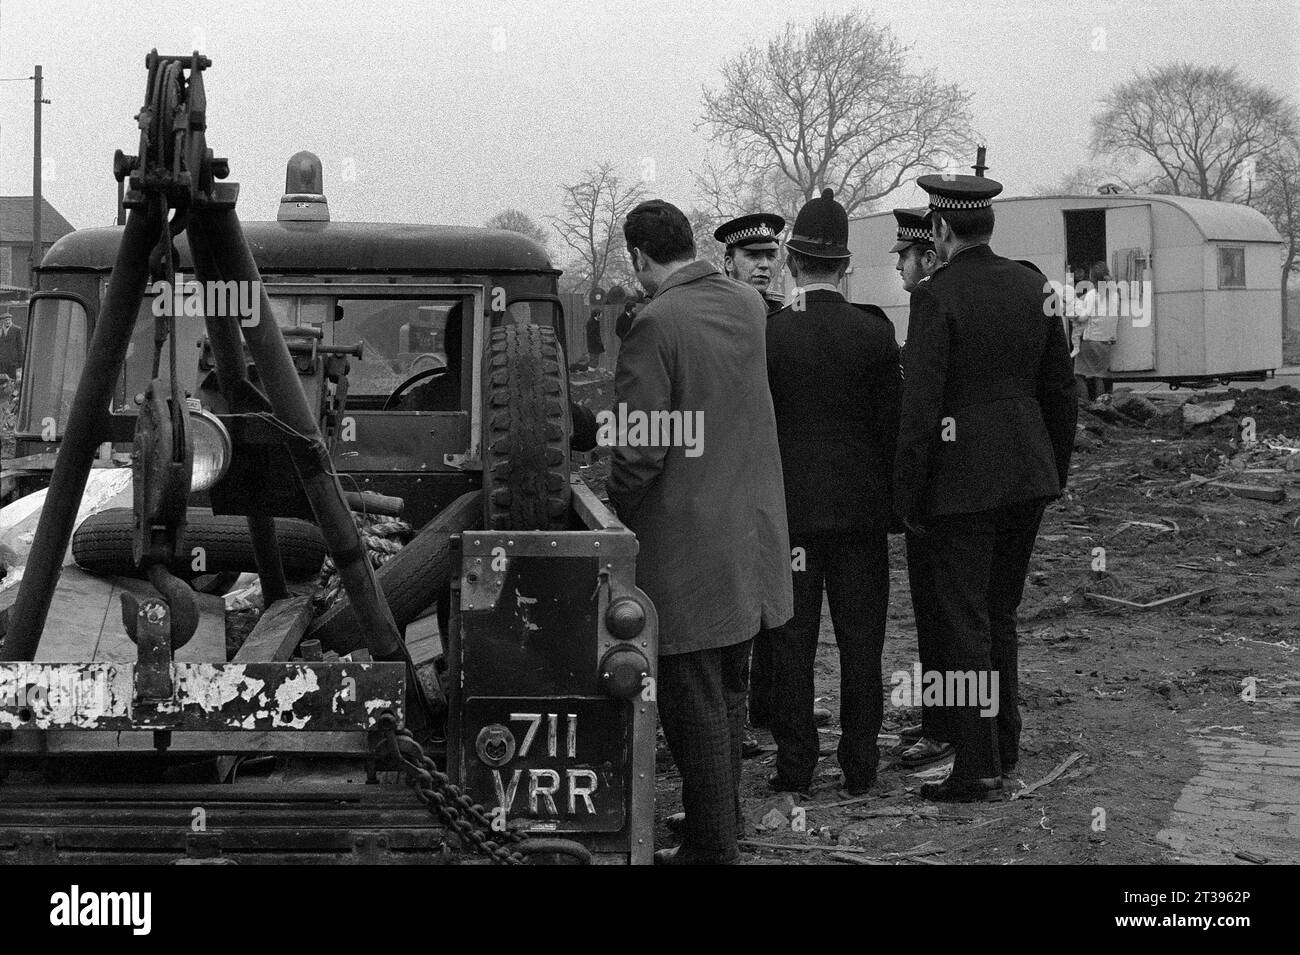 Des policiers sur des terrains vagues assistent à un problème avec des manifestants ou des voyageurs pendant le nettoyage des bidonvilles et la démolition de St ann's, Nottingham. 1969-1972 Banque D'Images